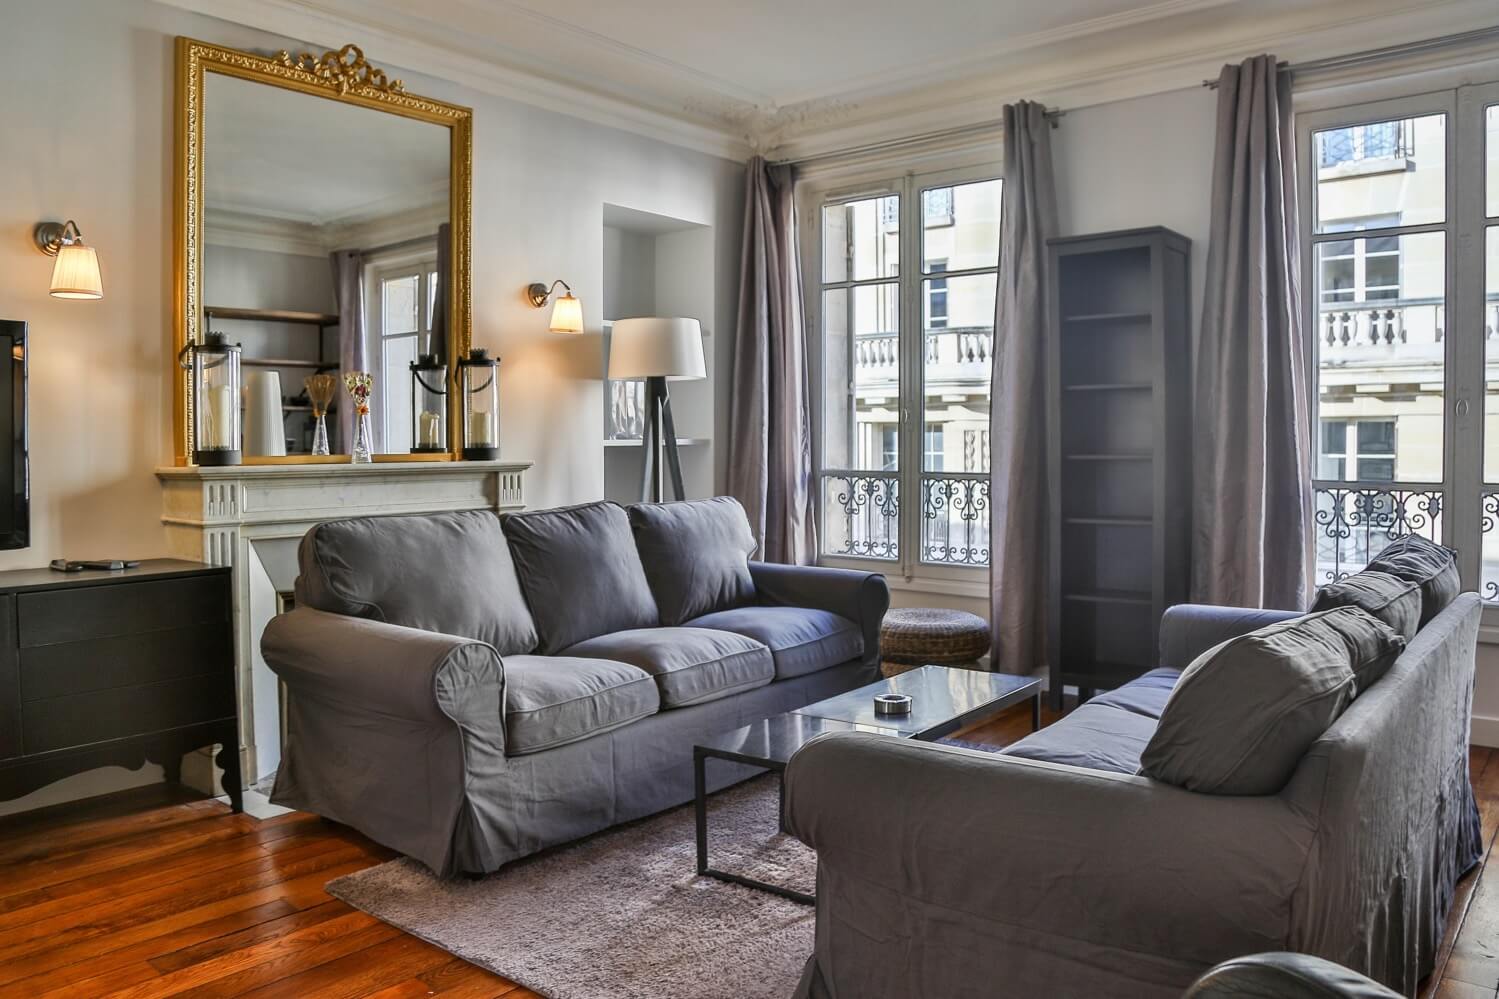 Appartement meublé T4 avec 3 chambres à Neuilly-sur-Seine (Rue Théophile Gautier) à louer longue durée : €4,300/ mois